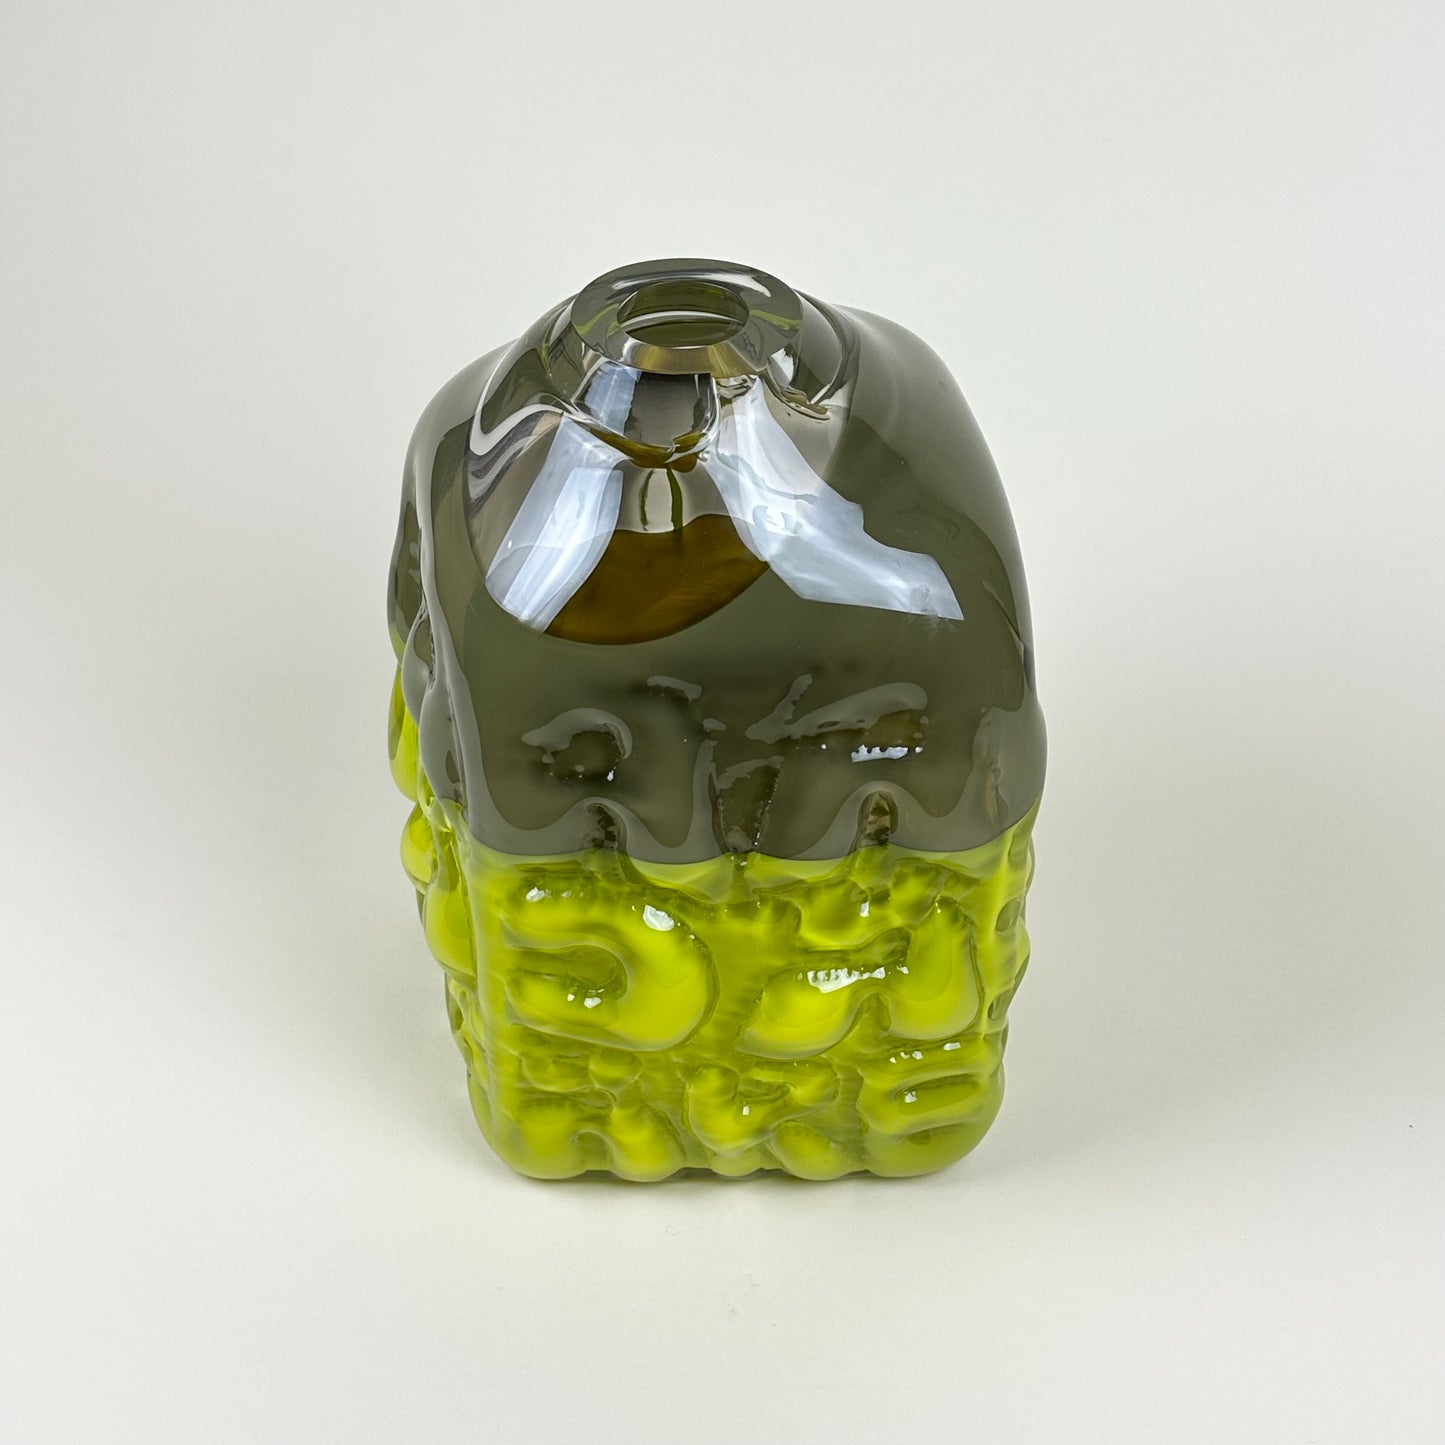 Acid green/olive "AADÄÄRE" vase by Studio Reiser